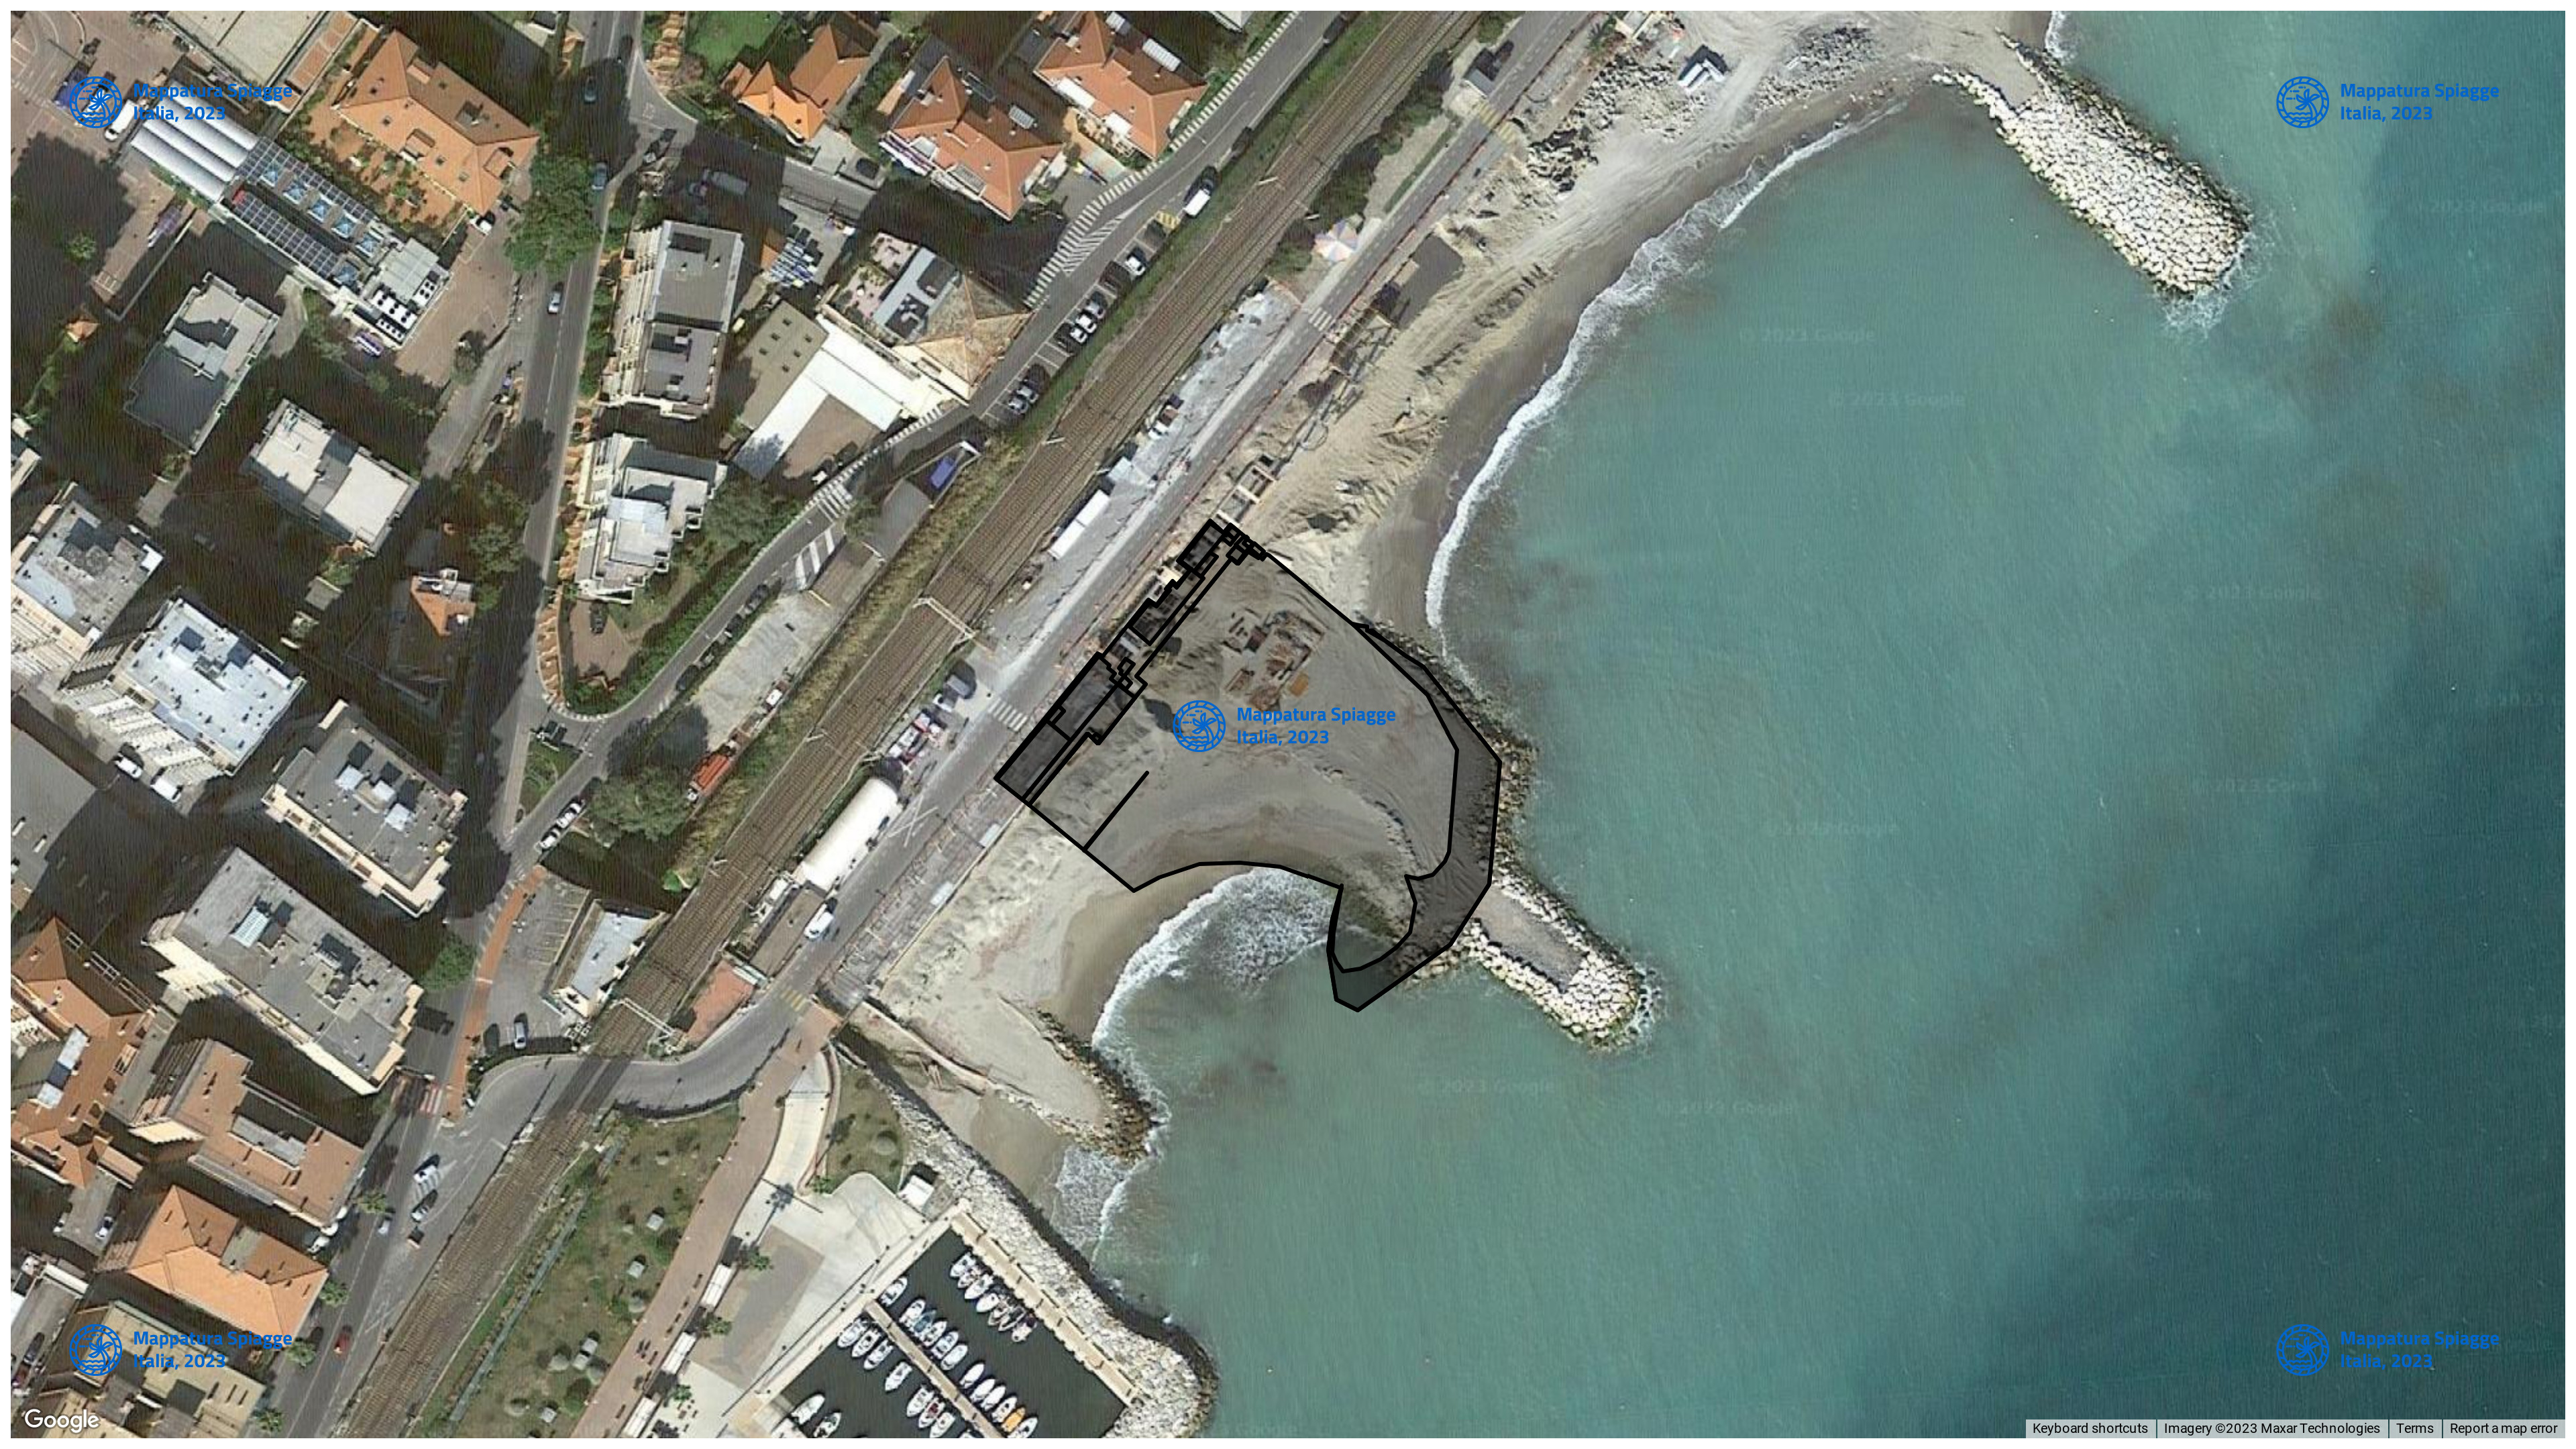 Foto Satellitare - Google Maps - Comune Loano, Concessione: N. 3670 / 2005 del 24-09-2023